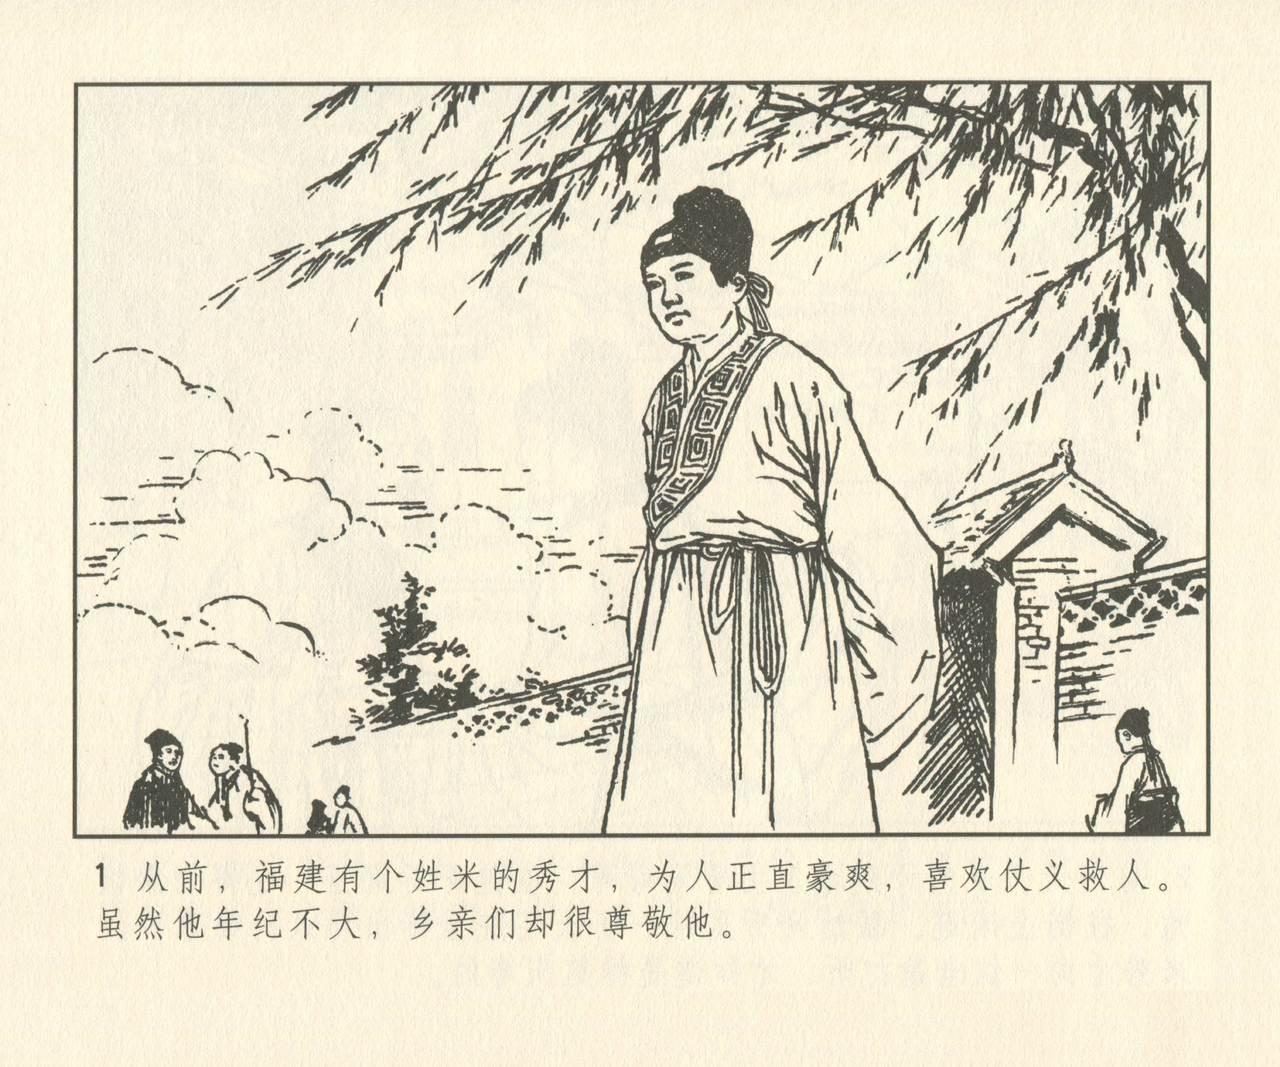 聊斋志异 张玮等绘 天津人民美术出版社 卷二十一 ~ 三十 129